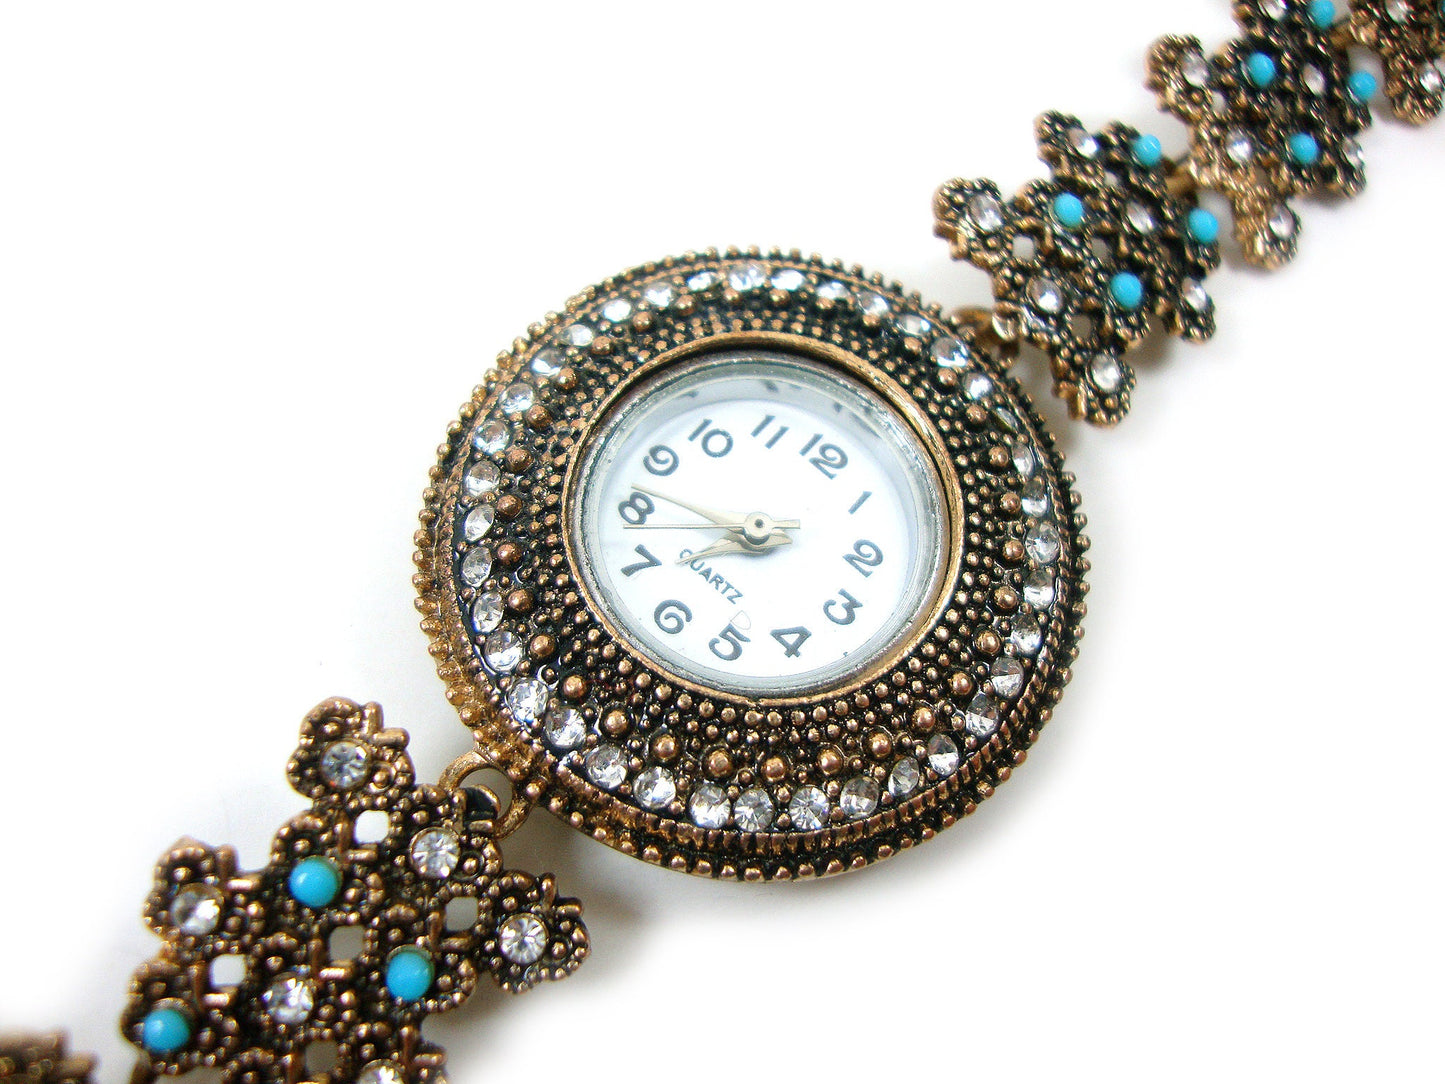 Greek Byzantine Modern Watch ,Blue Stones & Crystals Quartz Round Ethnic Watch, Turkish Bracelet Watch, Greek Jewelry, Greek Turkish Jewelry